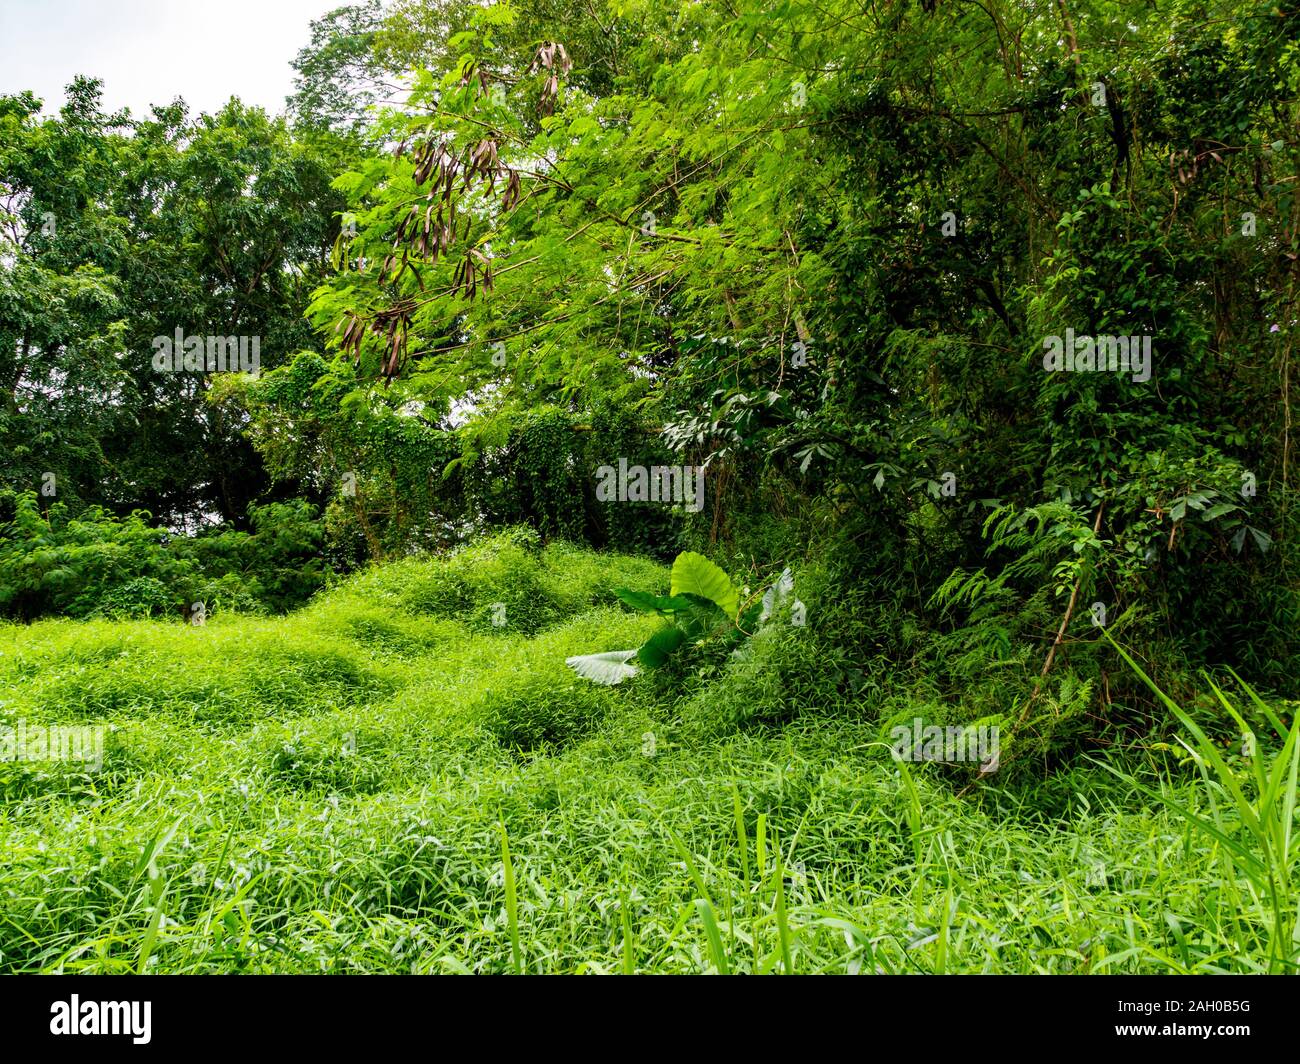 Blick auf den dichten, grünen Vegetation, Sträucher, Büsche, Gras und Bäume in einem tropischen Wald/Dschungel Lebensraum in Singapur, Südostasien Stockfoto